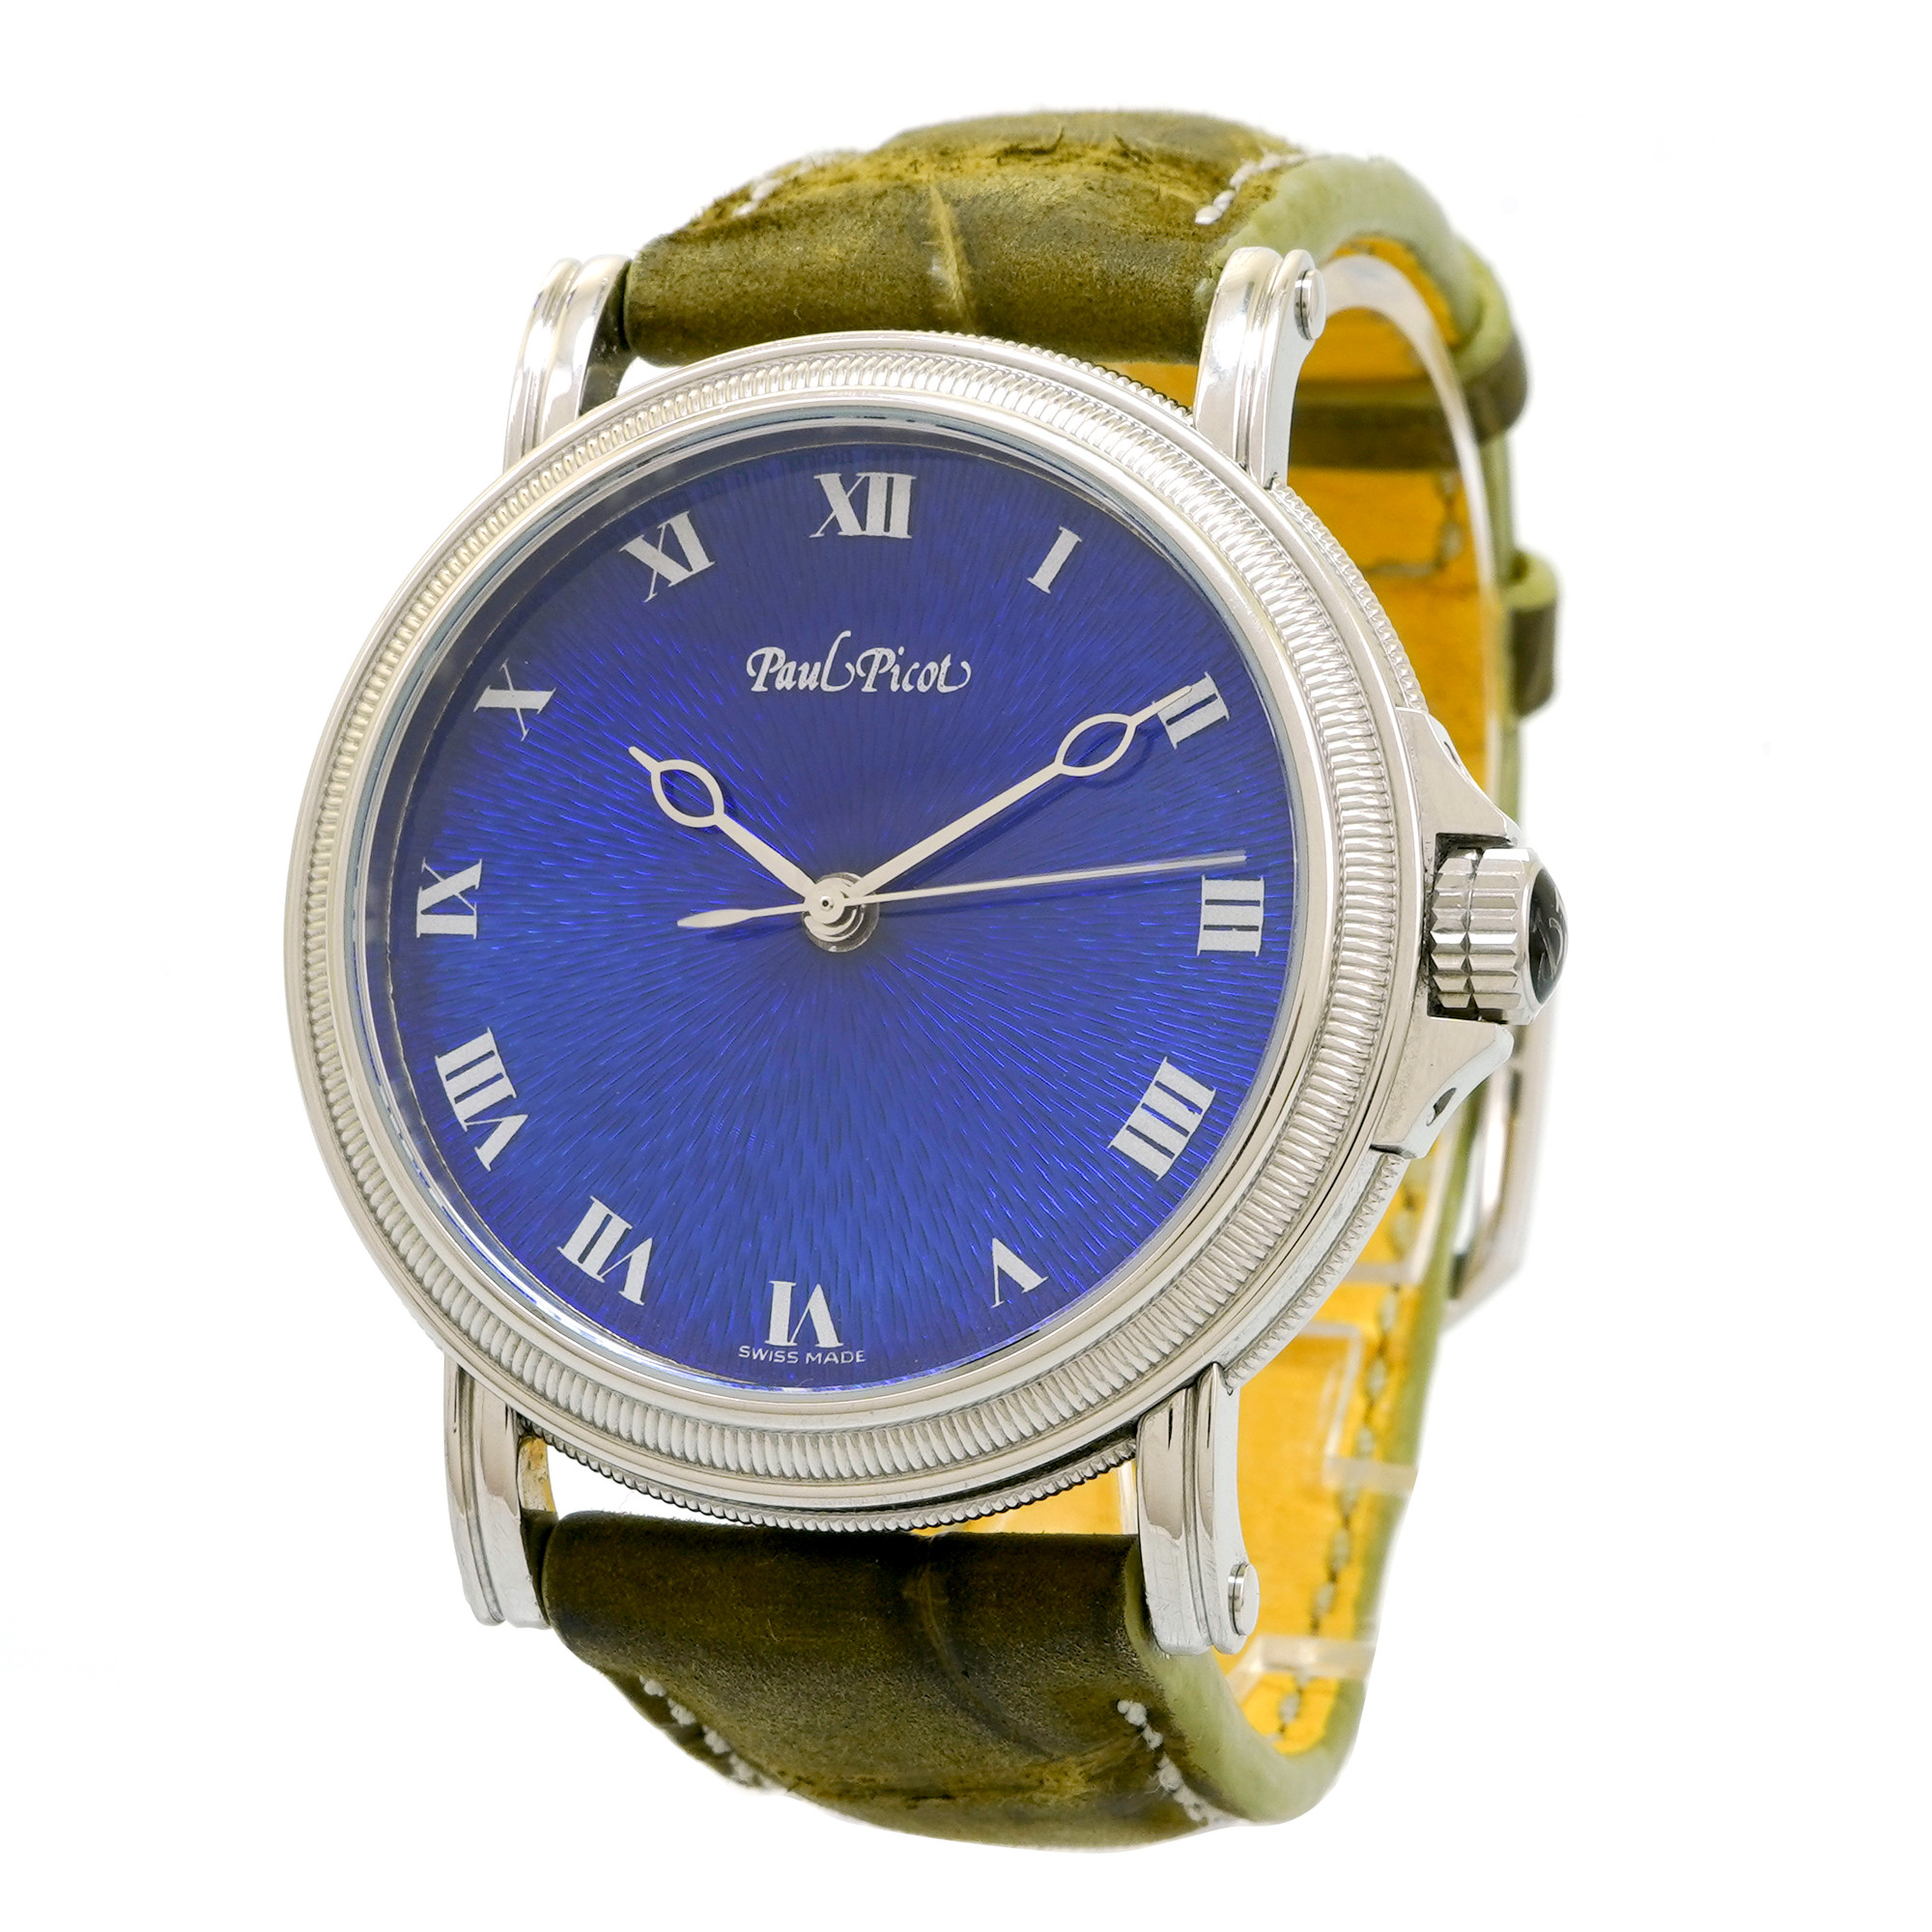 Paul Picot Flinque Grand Feu Blue Enamel Chronometer - Inventory 3894